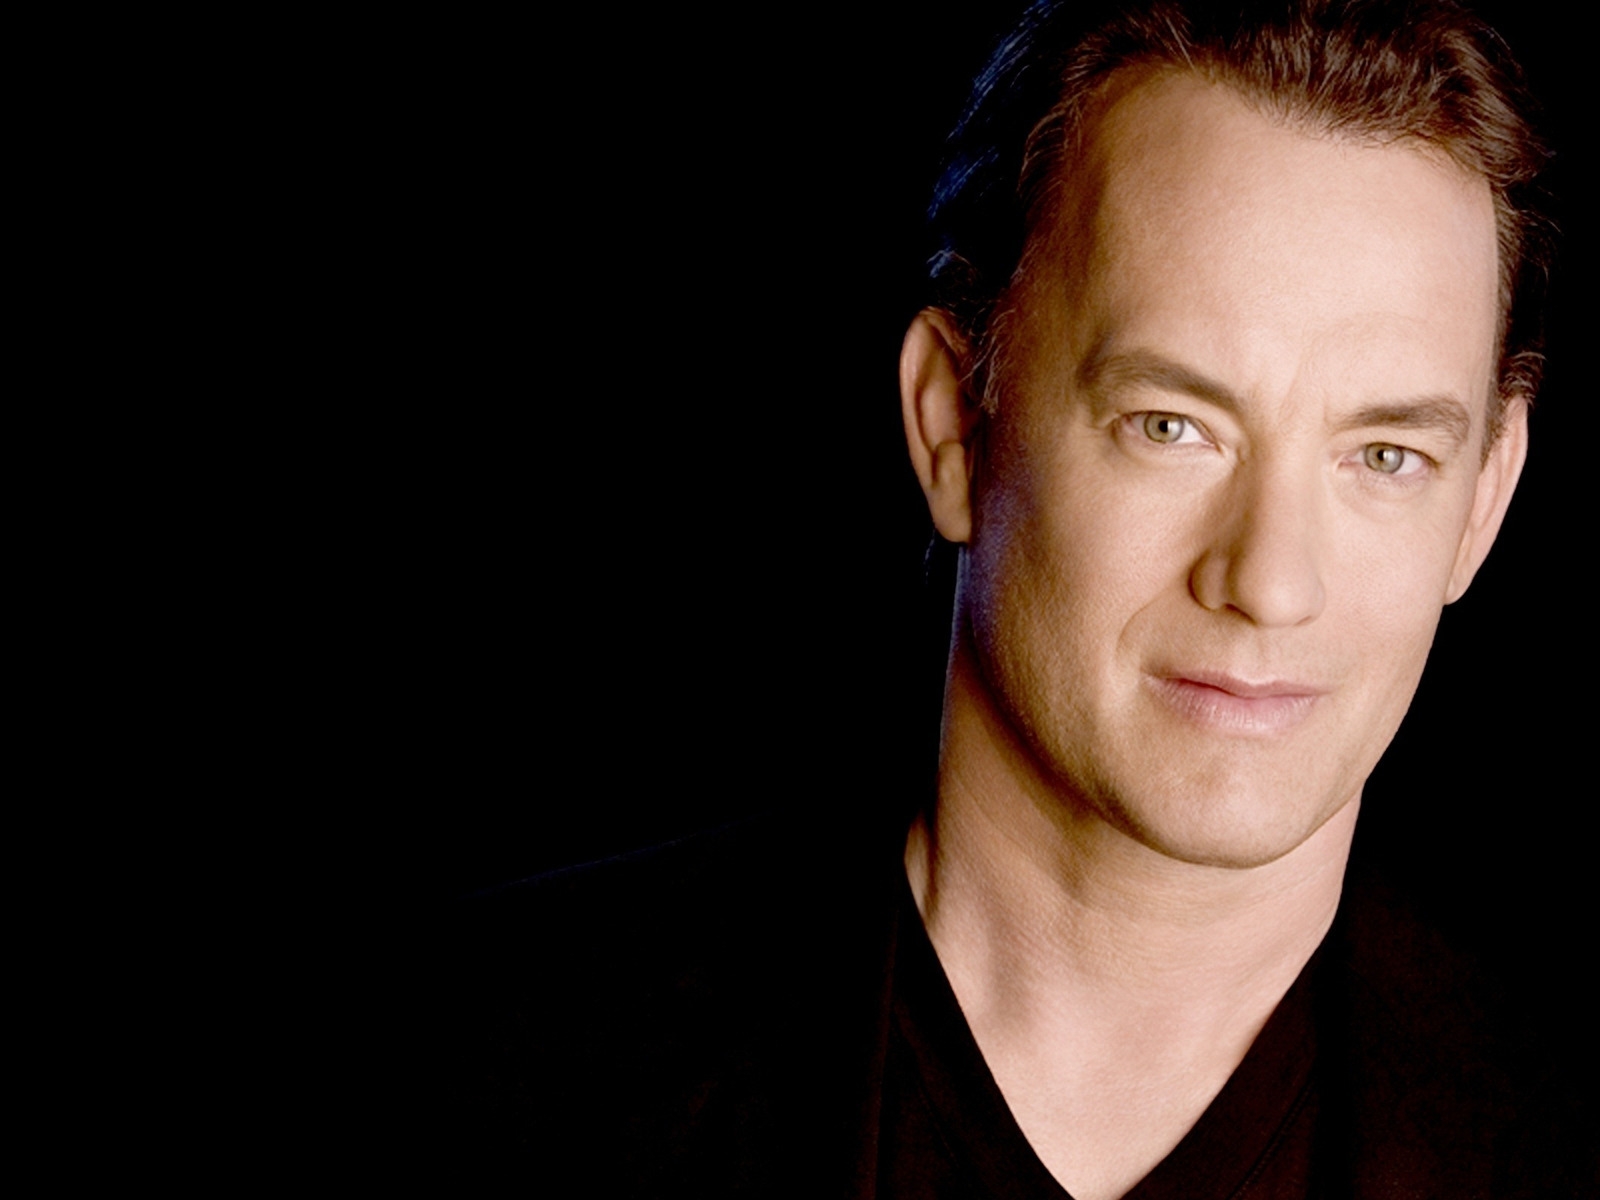 Tom Hanks for 1600 x 1200 resolution